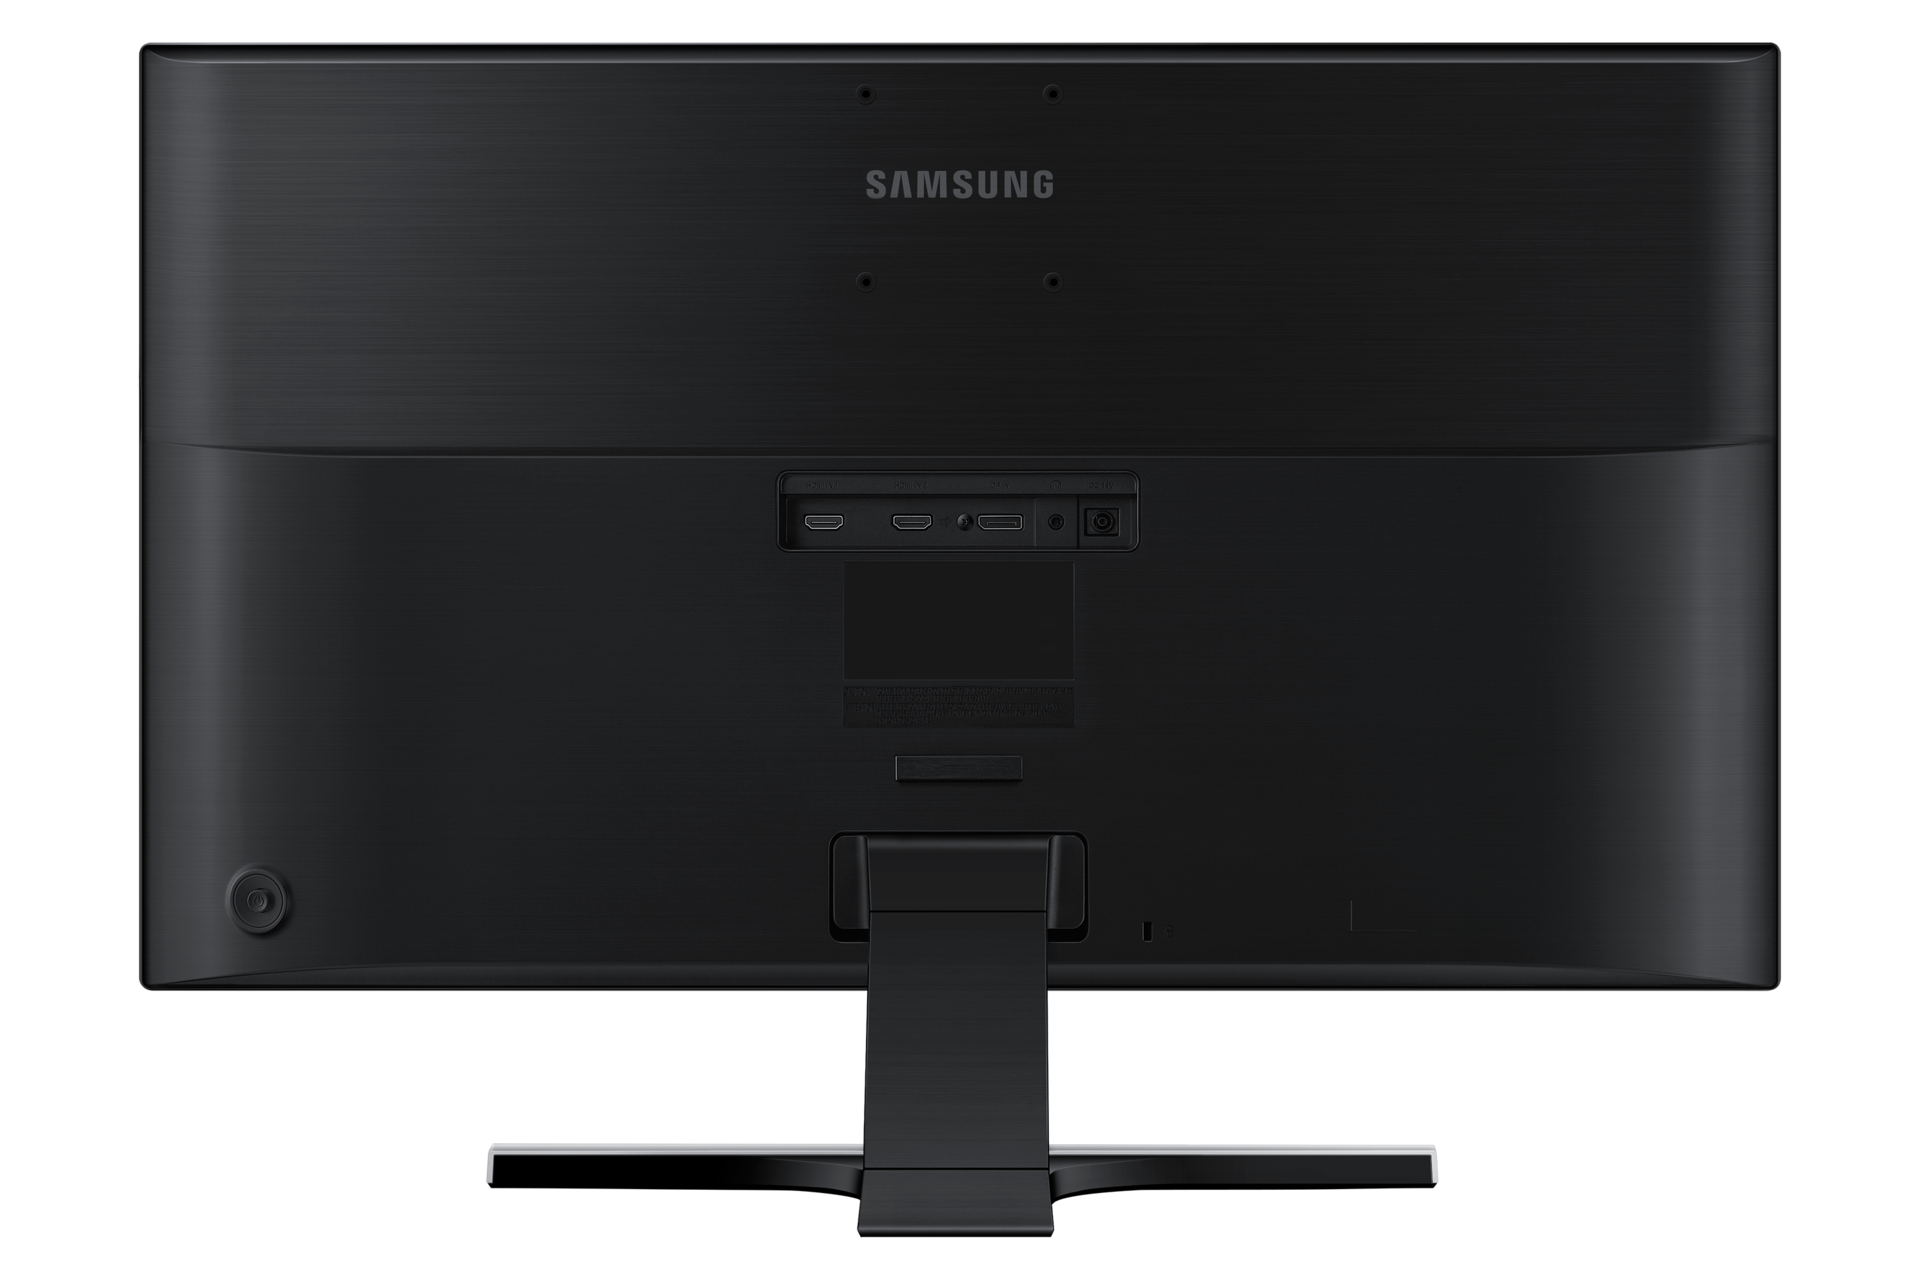 Samsung u28e590d firmware update